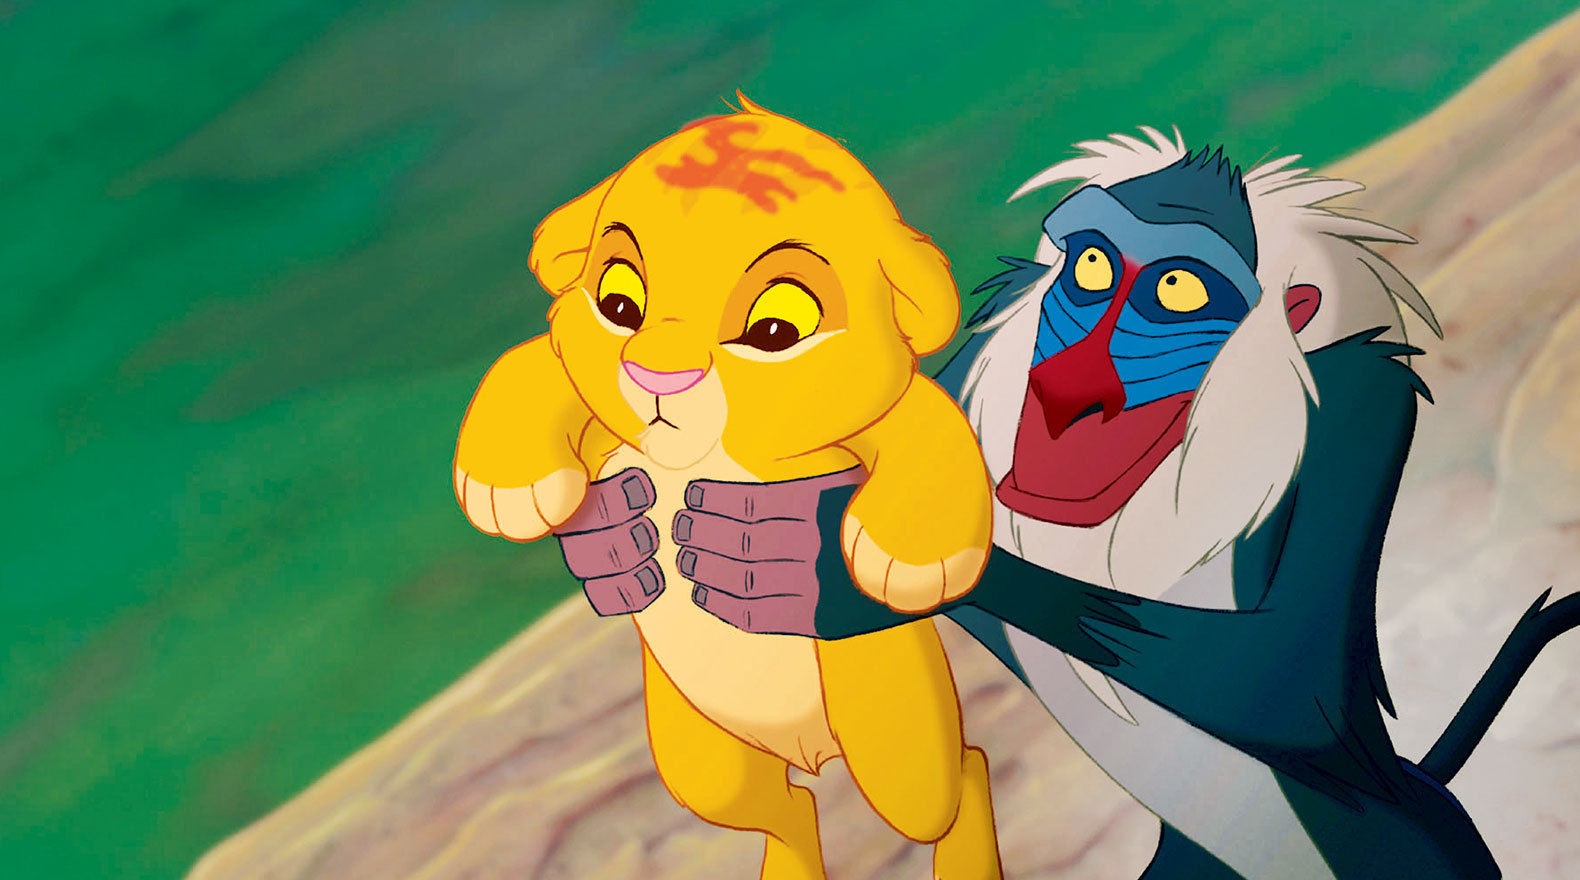 O bebê Simba sendo erguido por Rafiki em cena de O Rei Leão de 1994 (Foto: Reprodução)